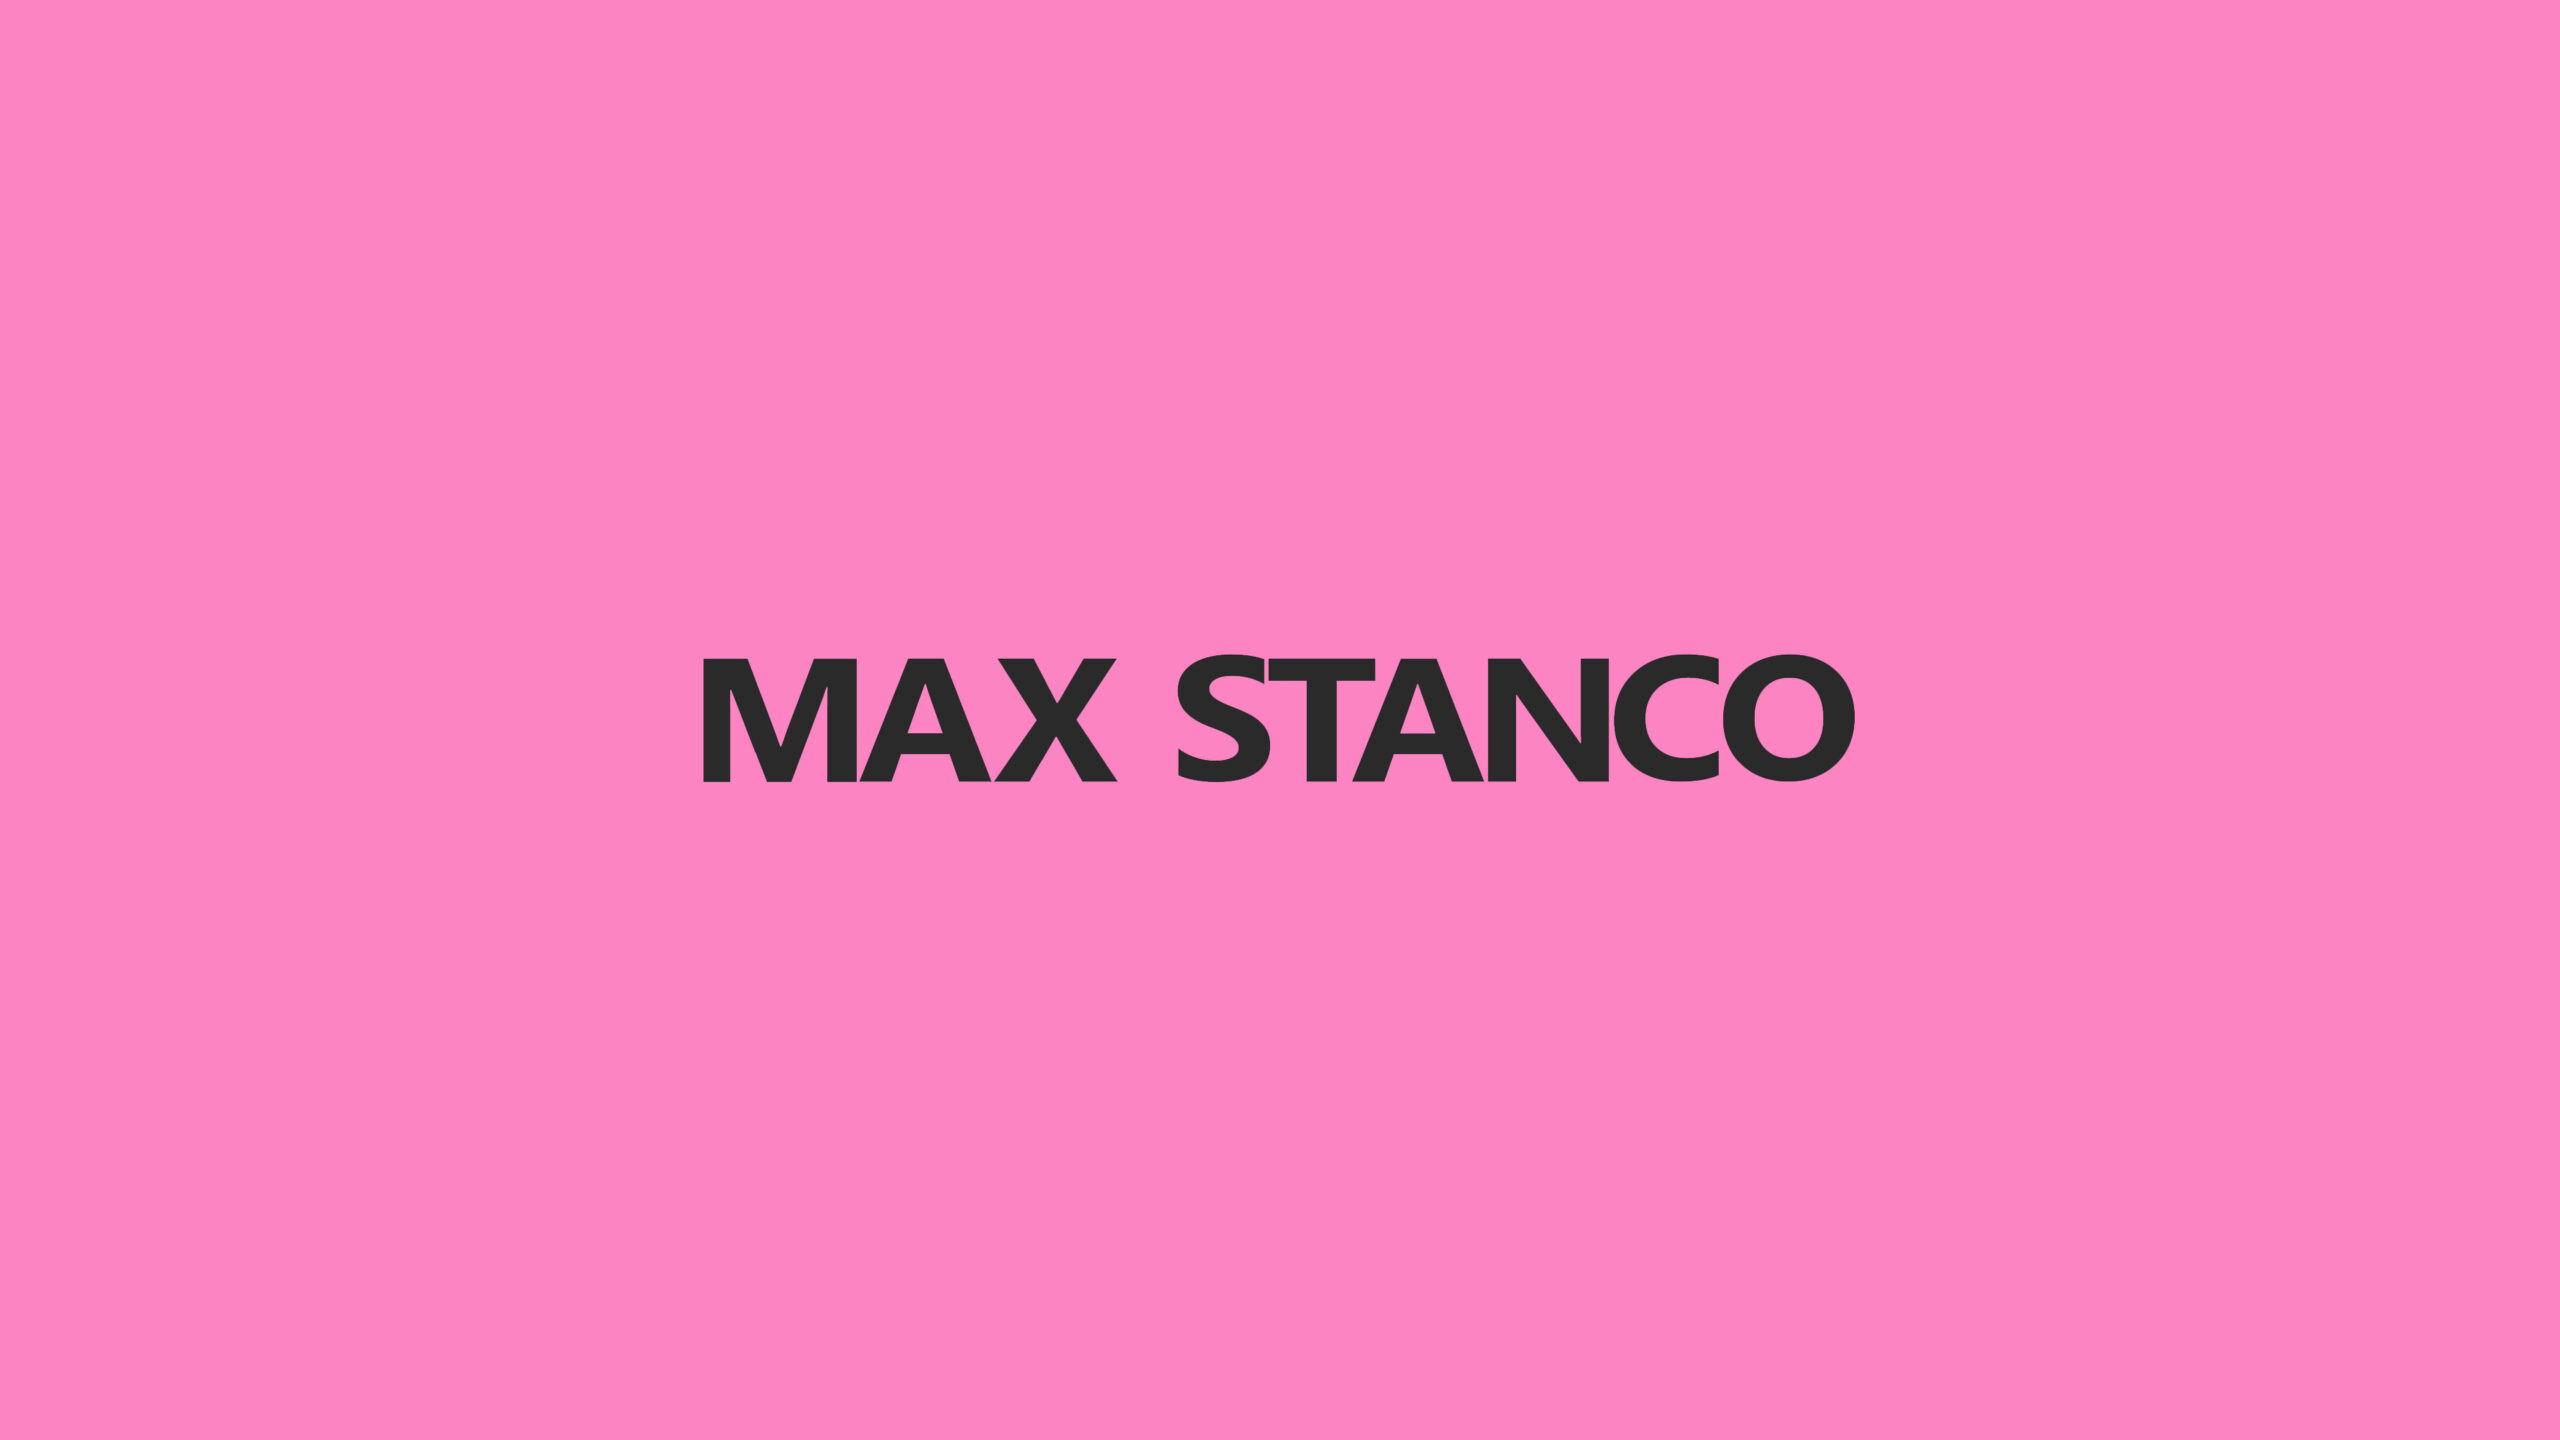 Max Stanco